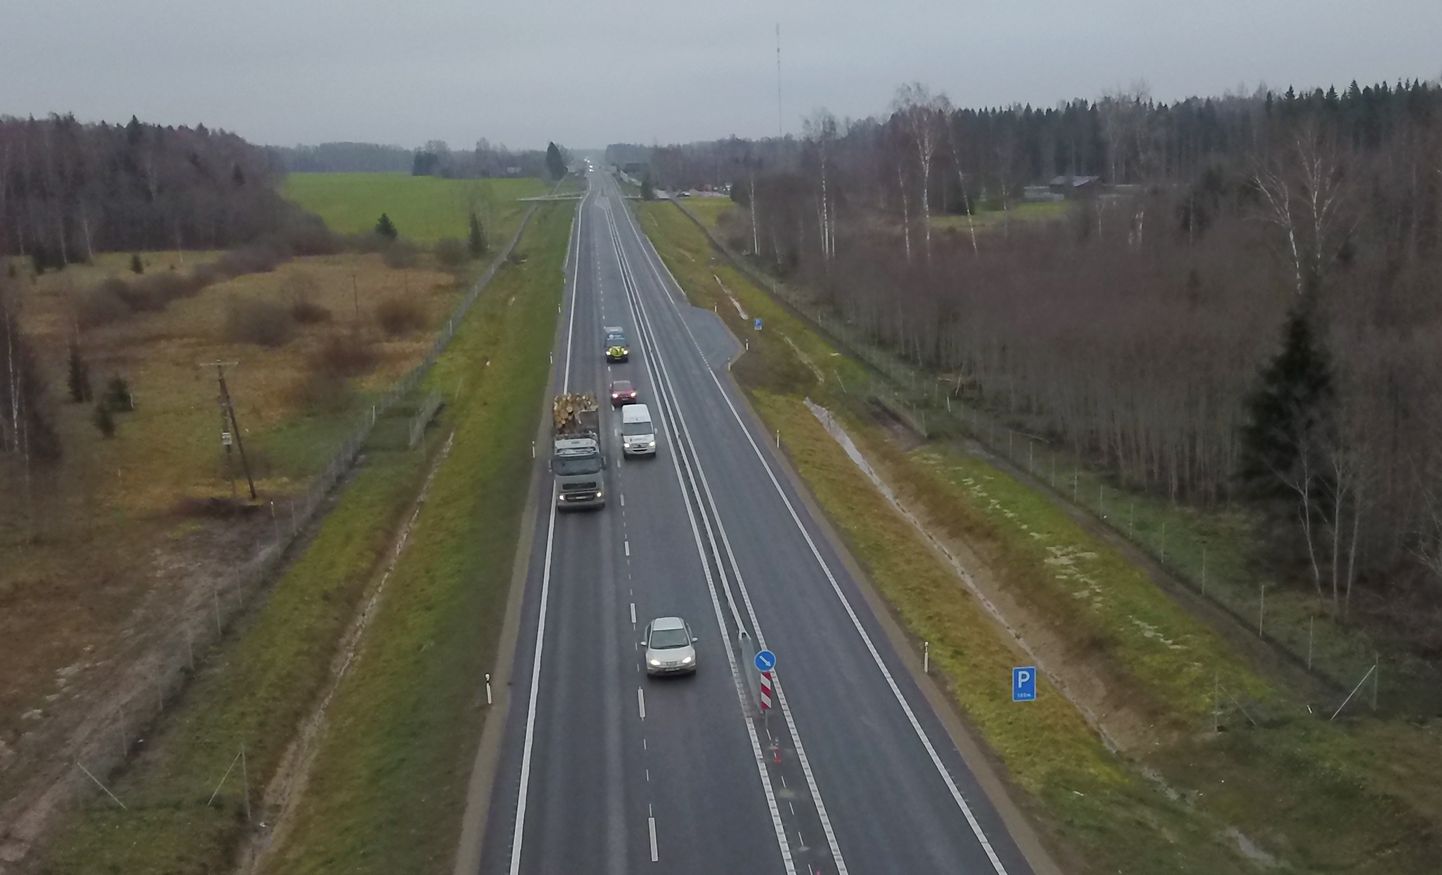 Tartumaal valmis 2018. aasta hilissügisel Tartust Tallinna viival maanteel 2 + 1 sõidurajaga maanteelõik Valmaotsa ja Kärevere vahel. Tuleval aastal algab seal lähedal ka 2 + 2 sõidurajaga teelõigu ehitus.